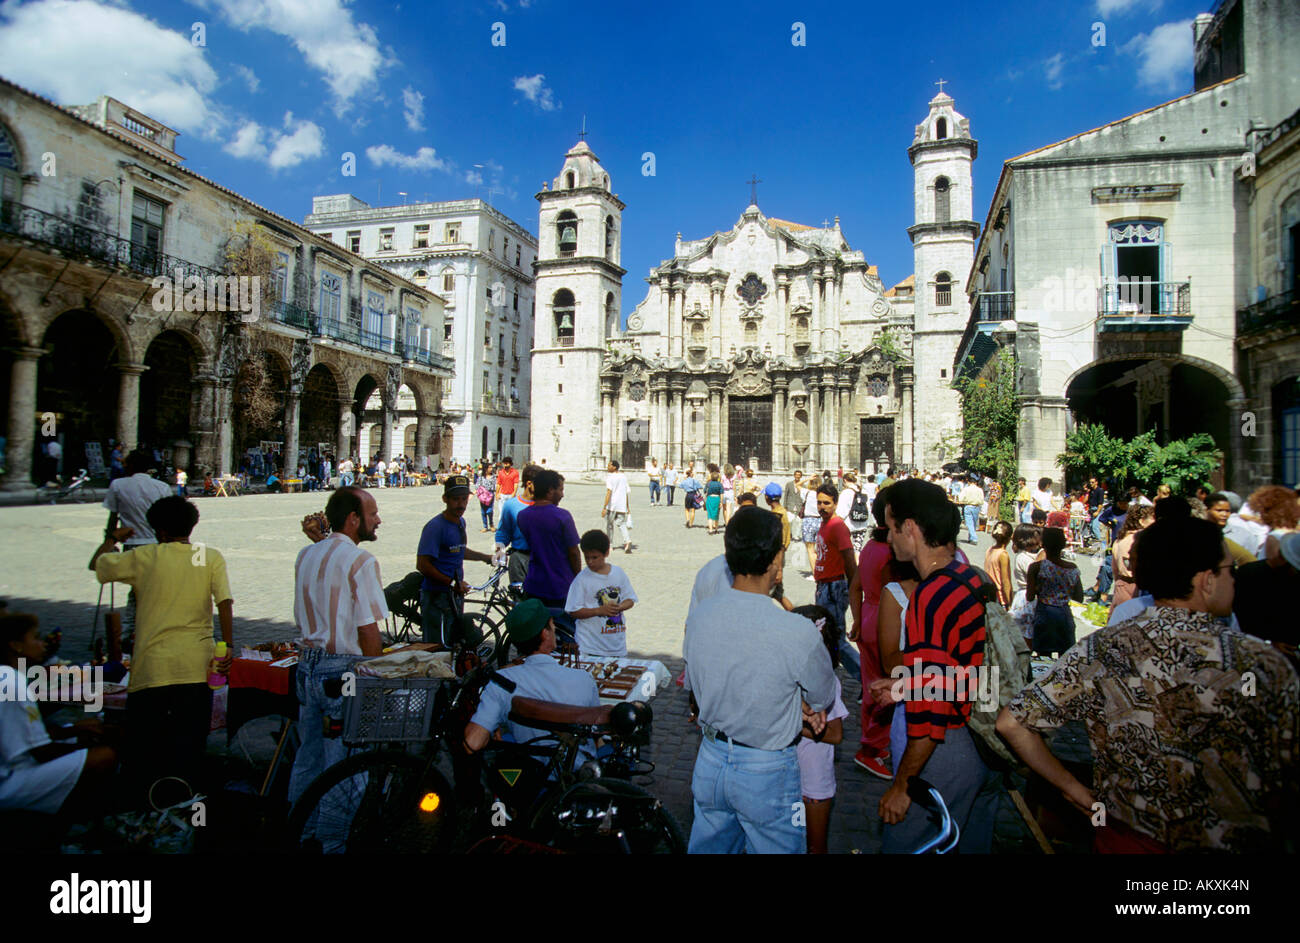 Cathédrale de la Plaza de la Catedral, La Havane, Cuba Banque D'Images